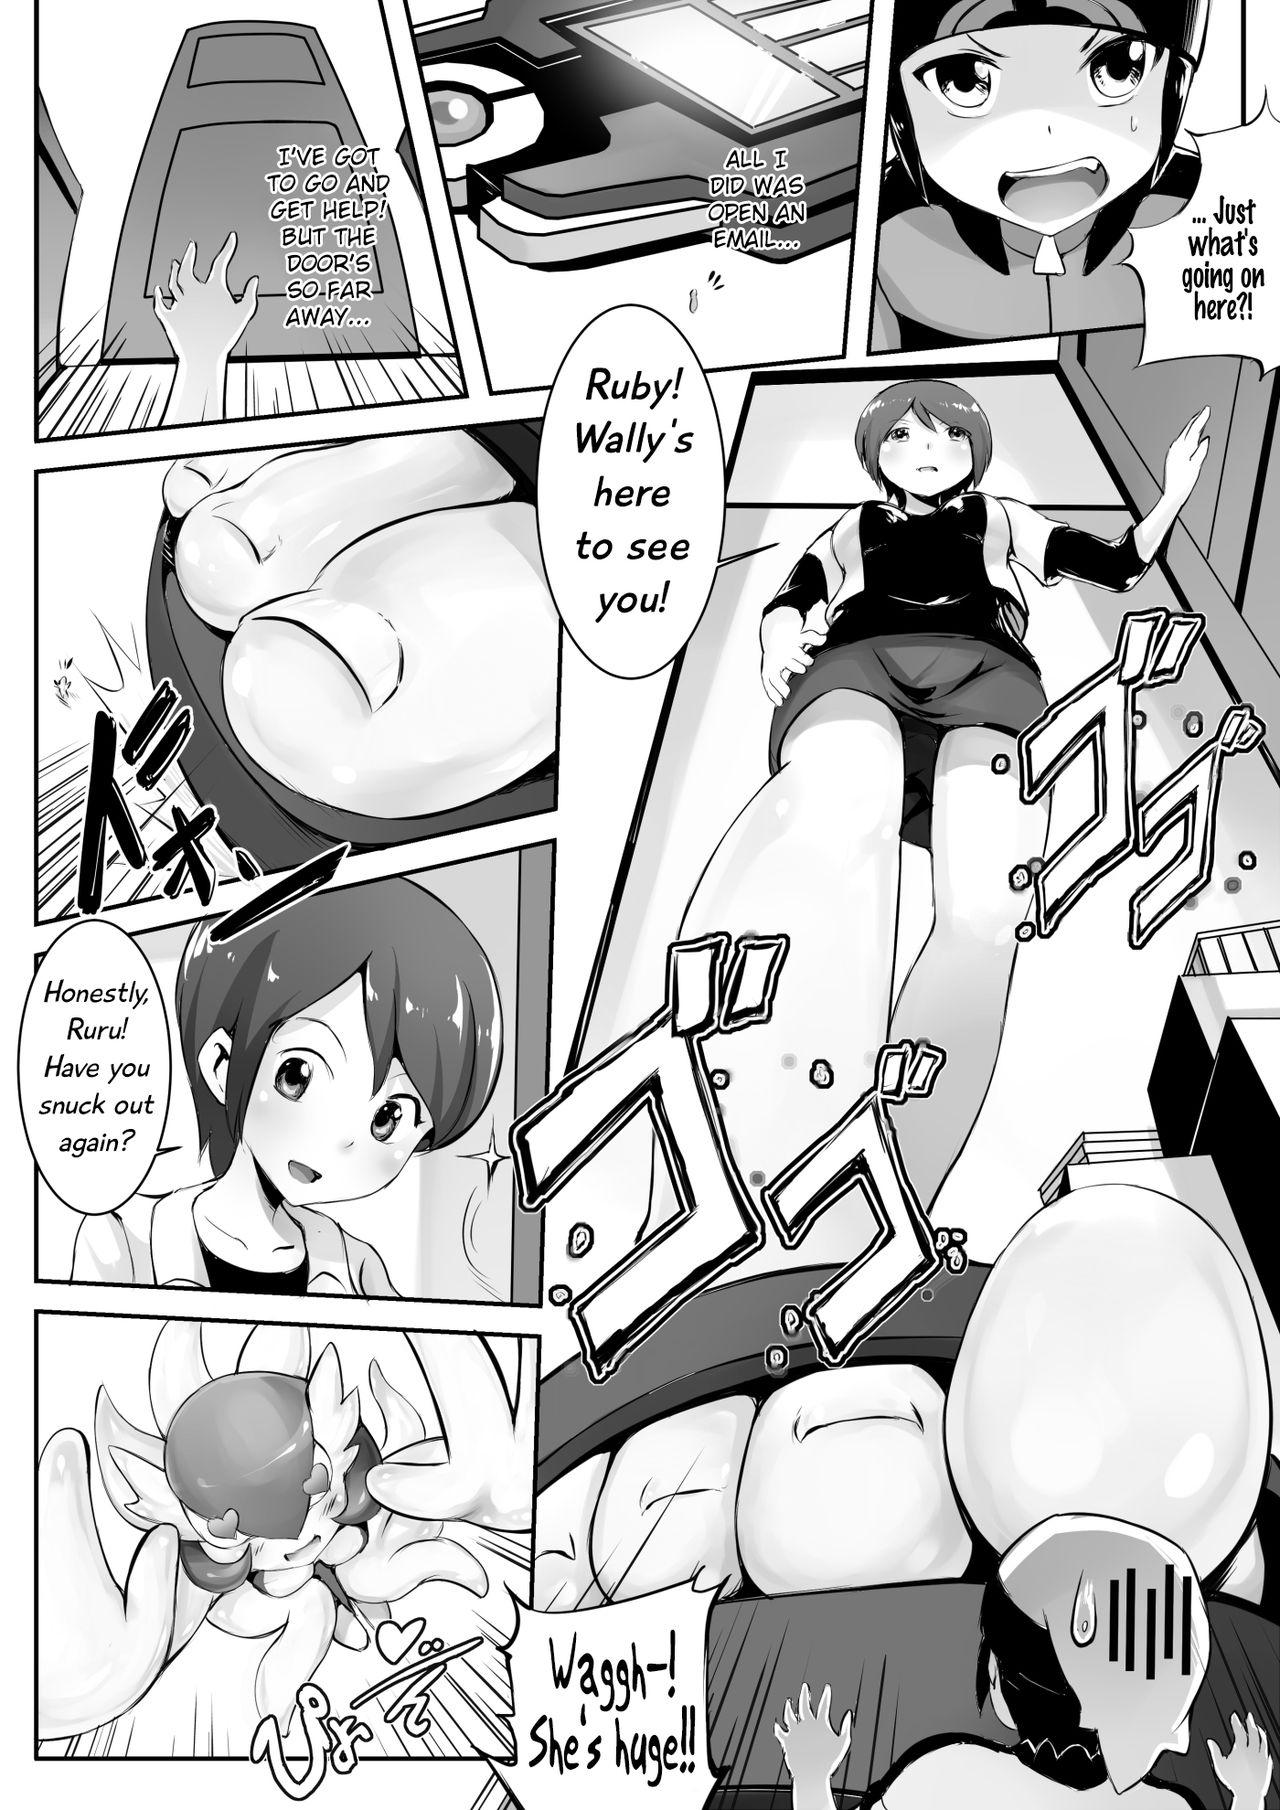 Smoking Pokemon GS - Begin - Pokemon Dancing - Page 3